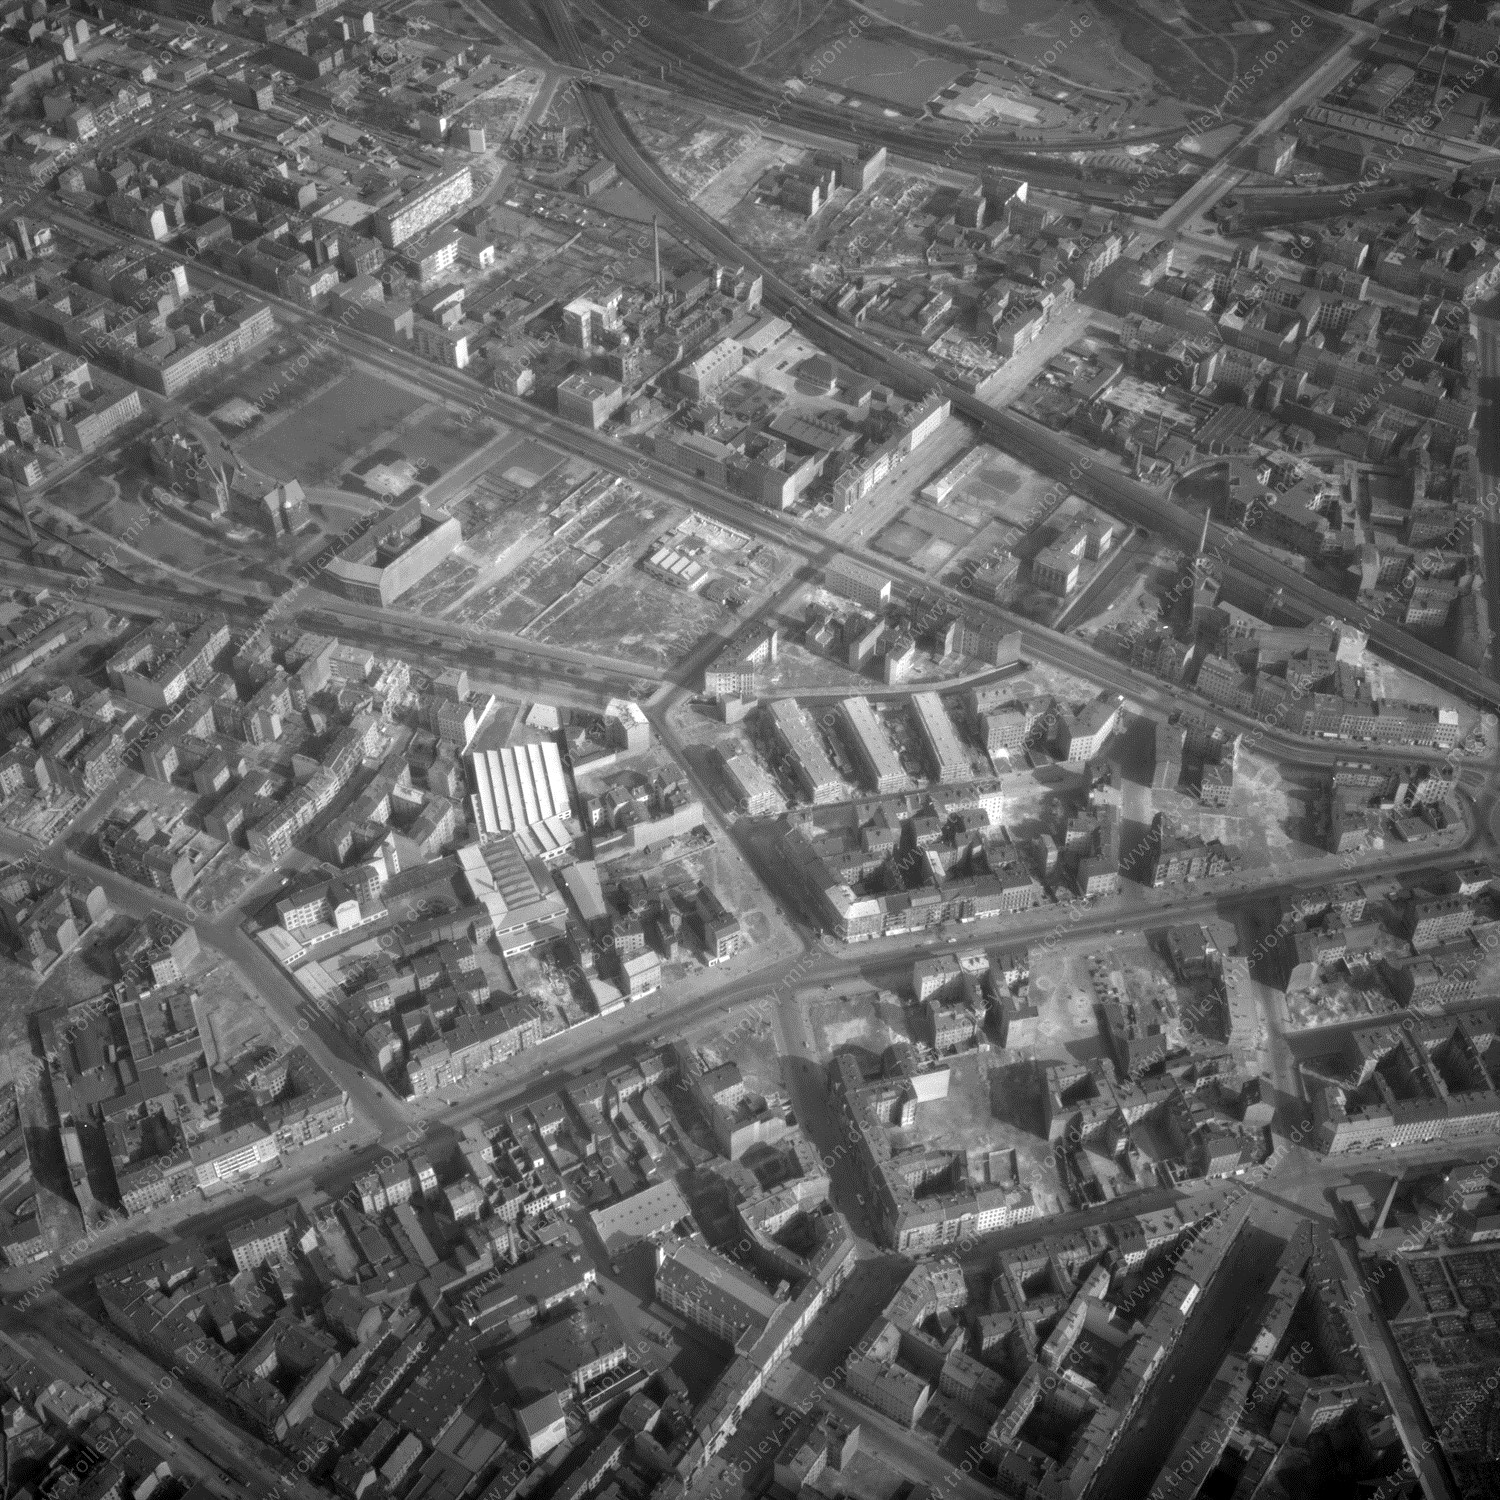 Alte Fotos und Luftbilder von Berlin - Luftbildaufnahme Nr. 08 - Historische Luftaufnahmen von West-Berlin aus dem Jahr 1954 - Flugstrecke Quebec